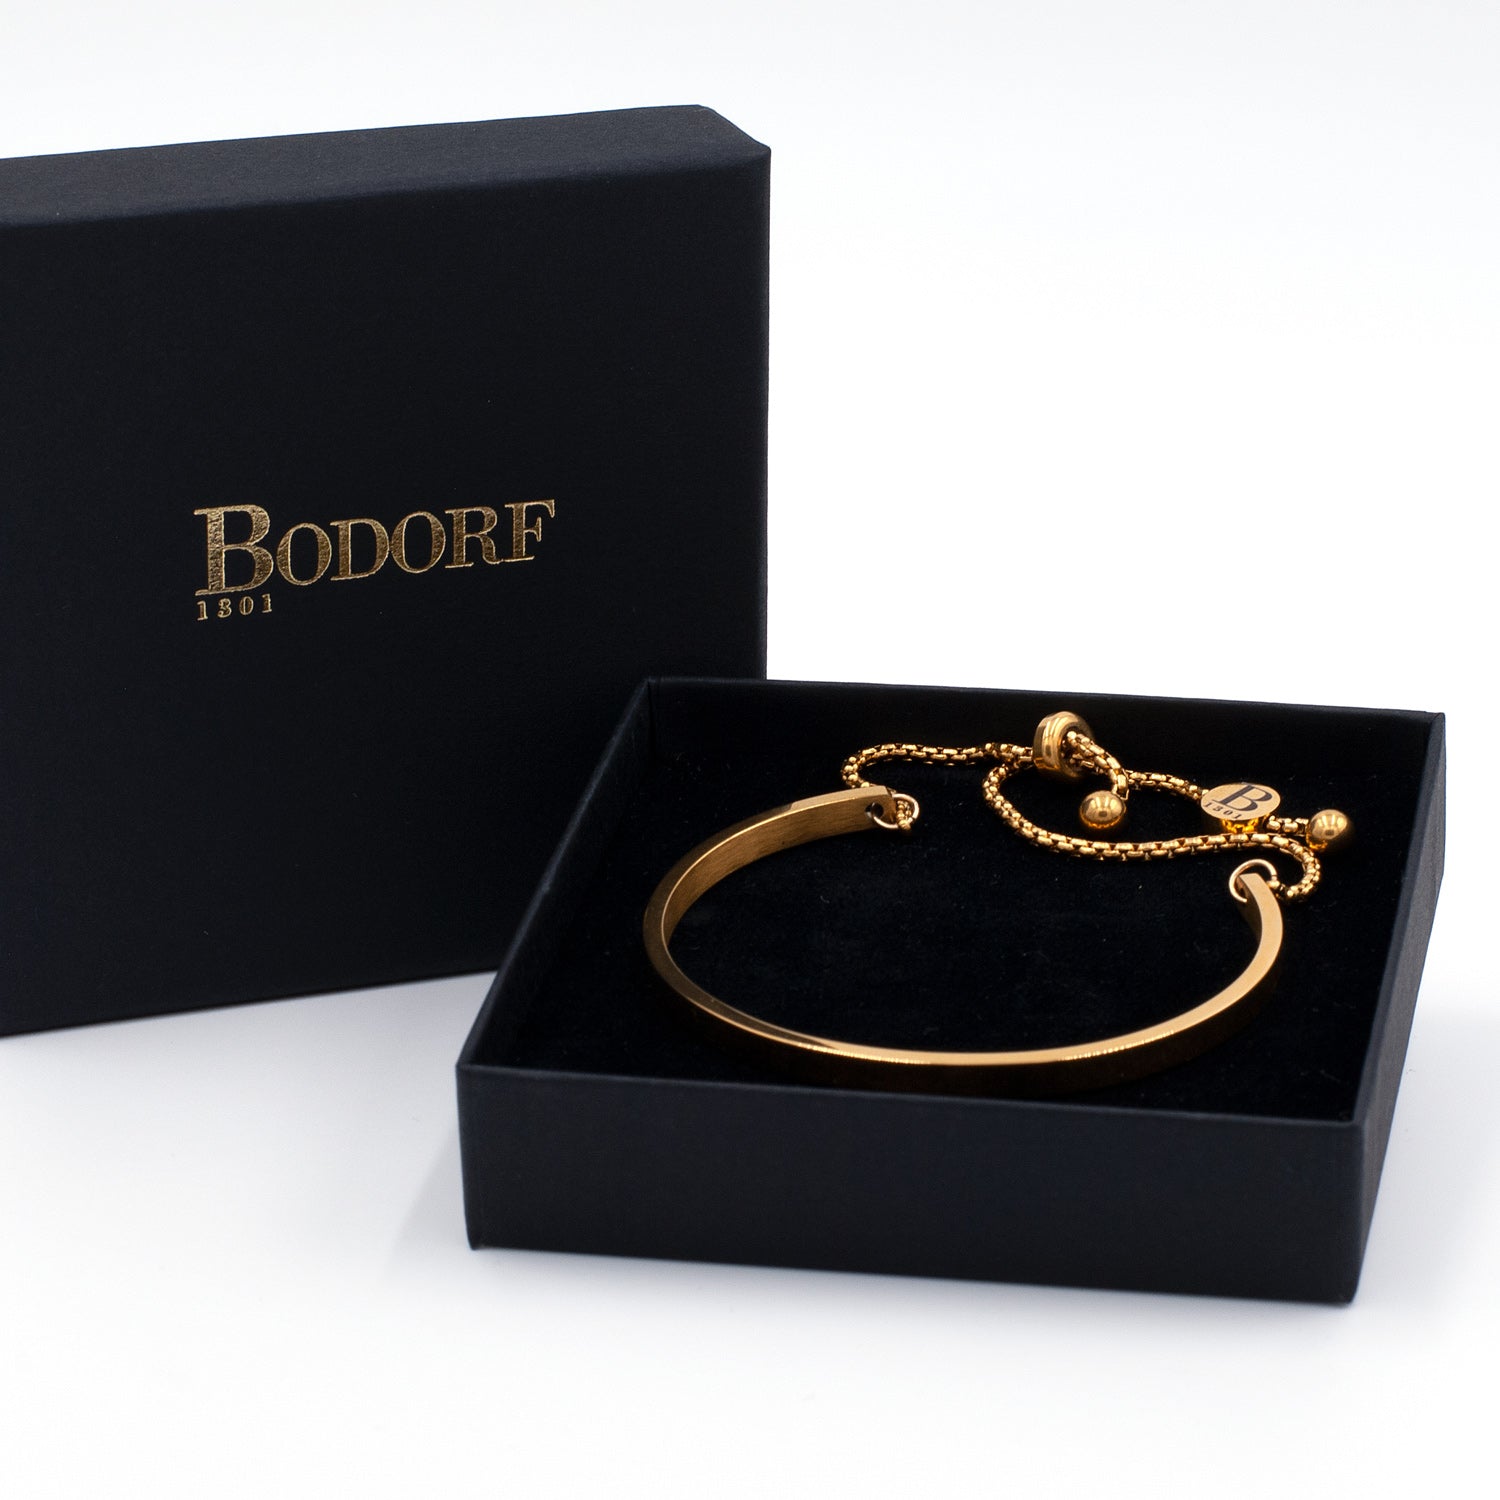 Bodorf armband Fine Bangle Gold, strak vormgegeven bangle van glanzend gepolijste goud RVS